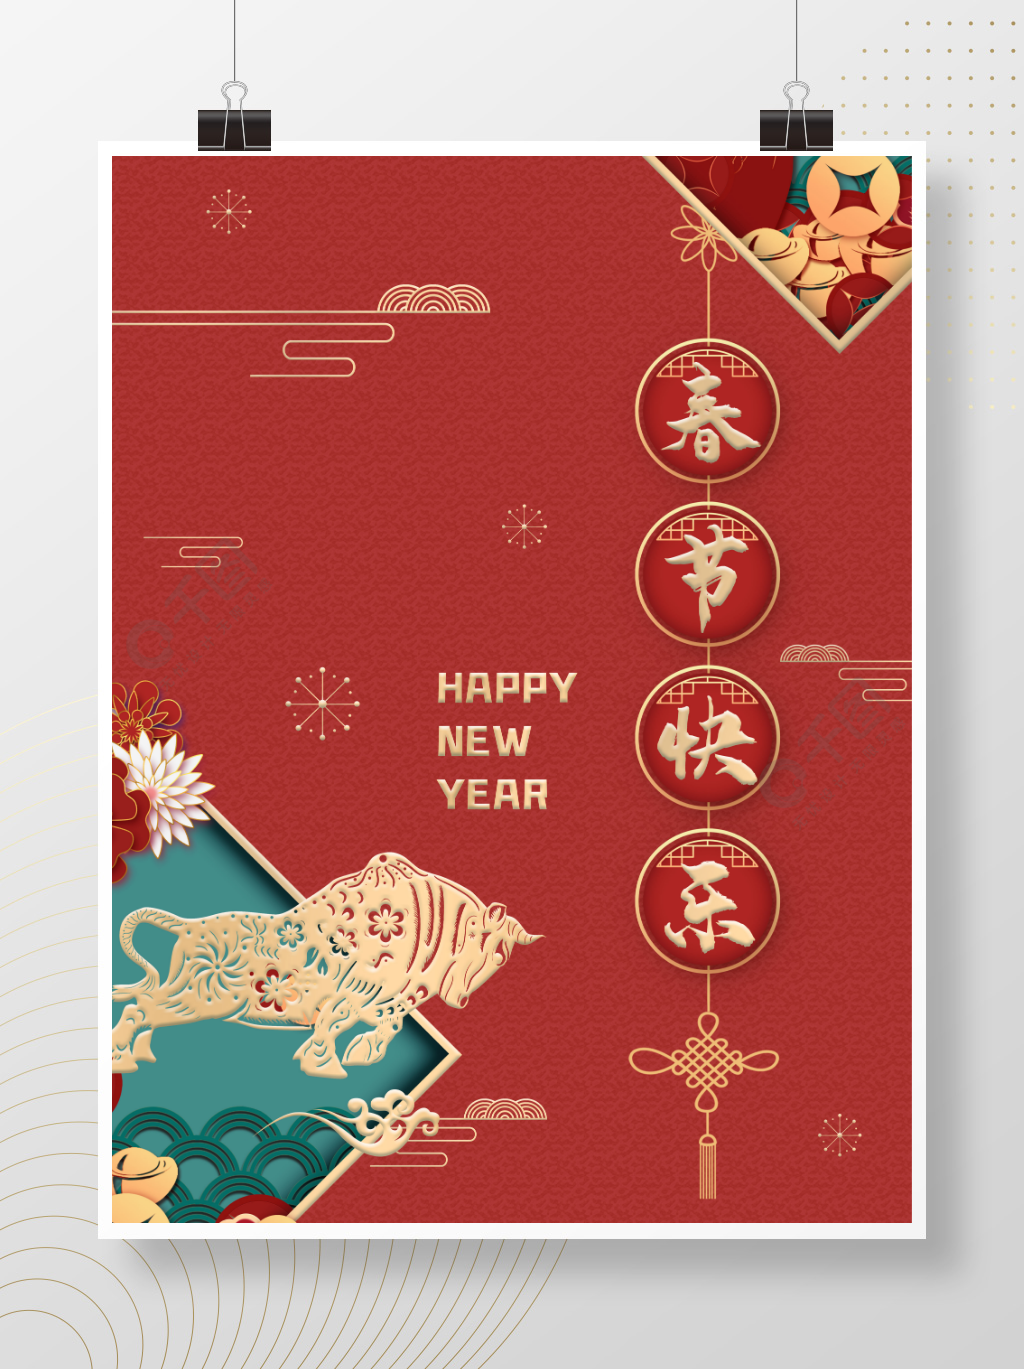 祝福员工春节快乐新年元旦喜庆红色海报半年前发布